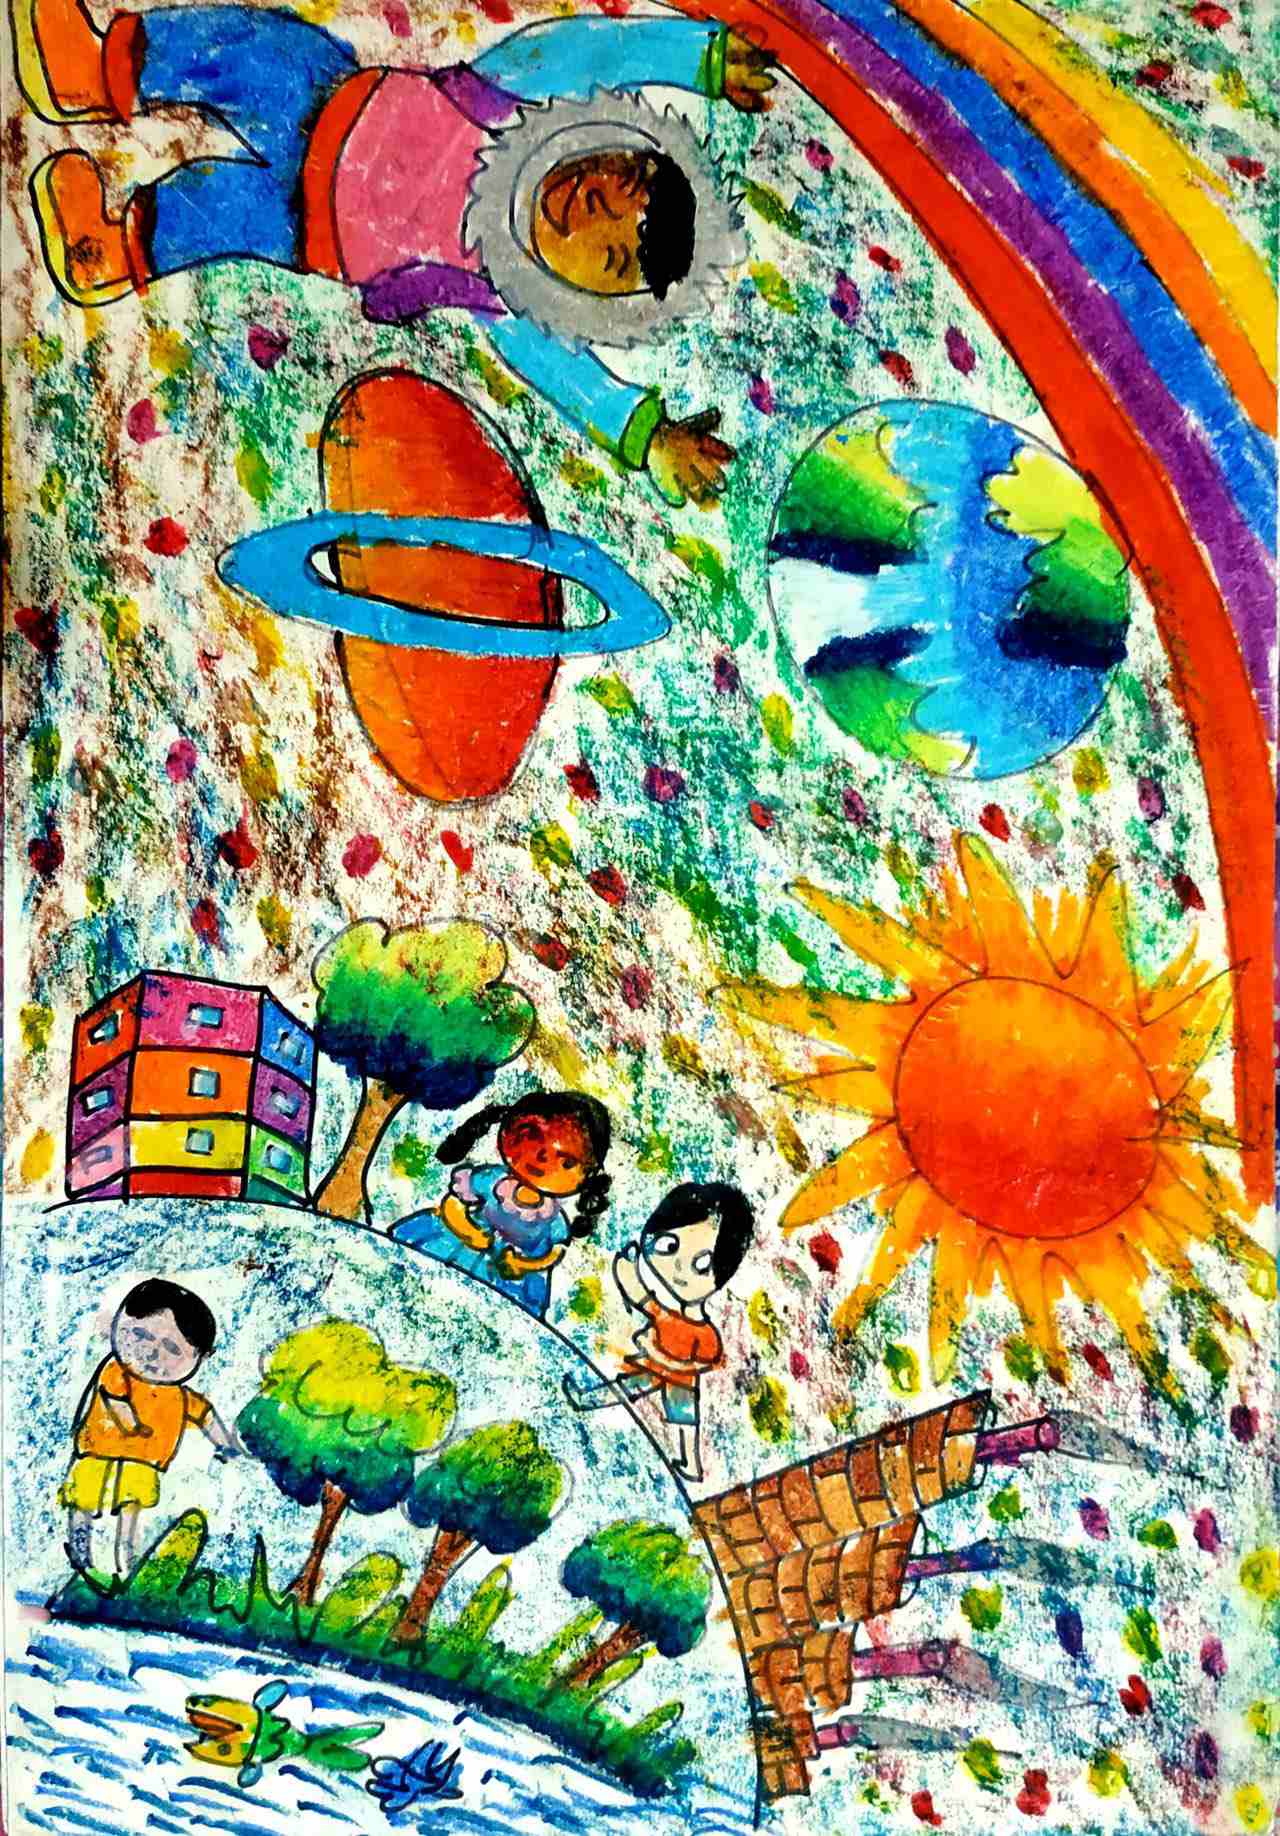 航天日绘画作品《我的世界》,孟加拉国Nameera Nargis